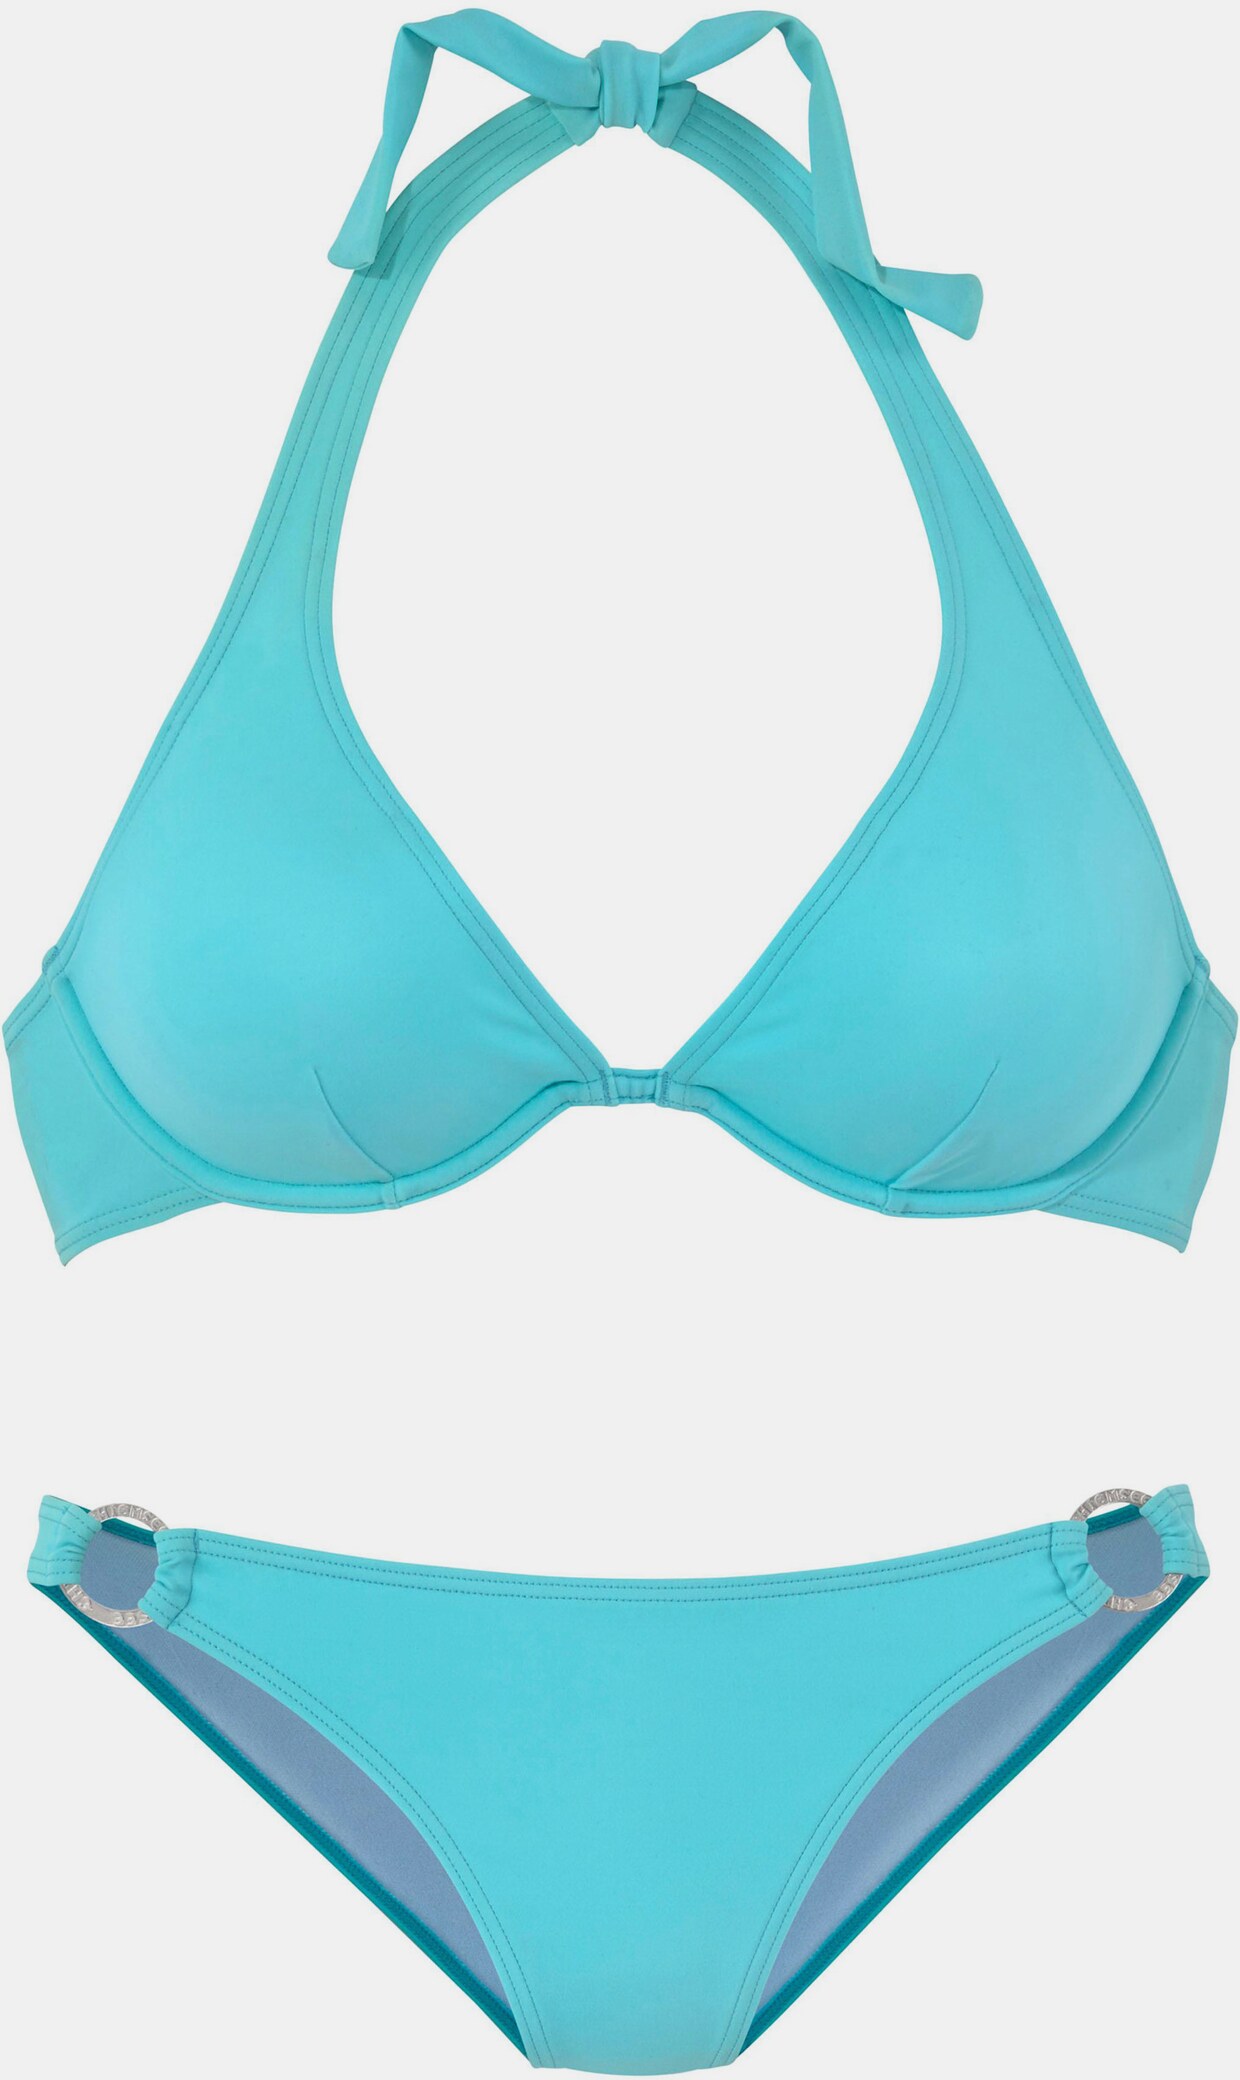 Chiemsee Bügel-Bikini - hellblau